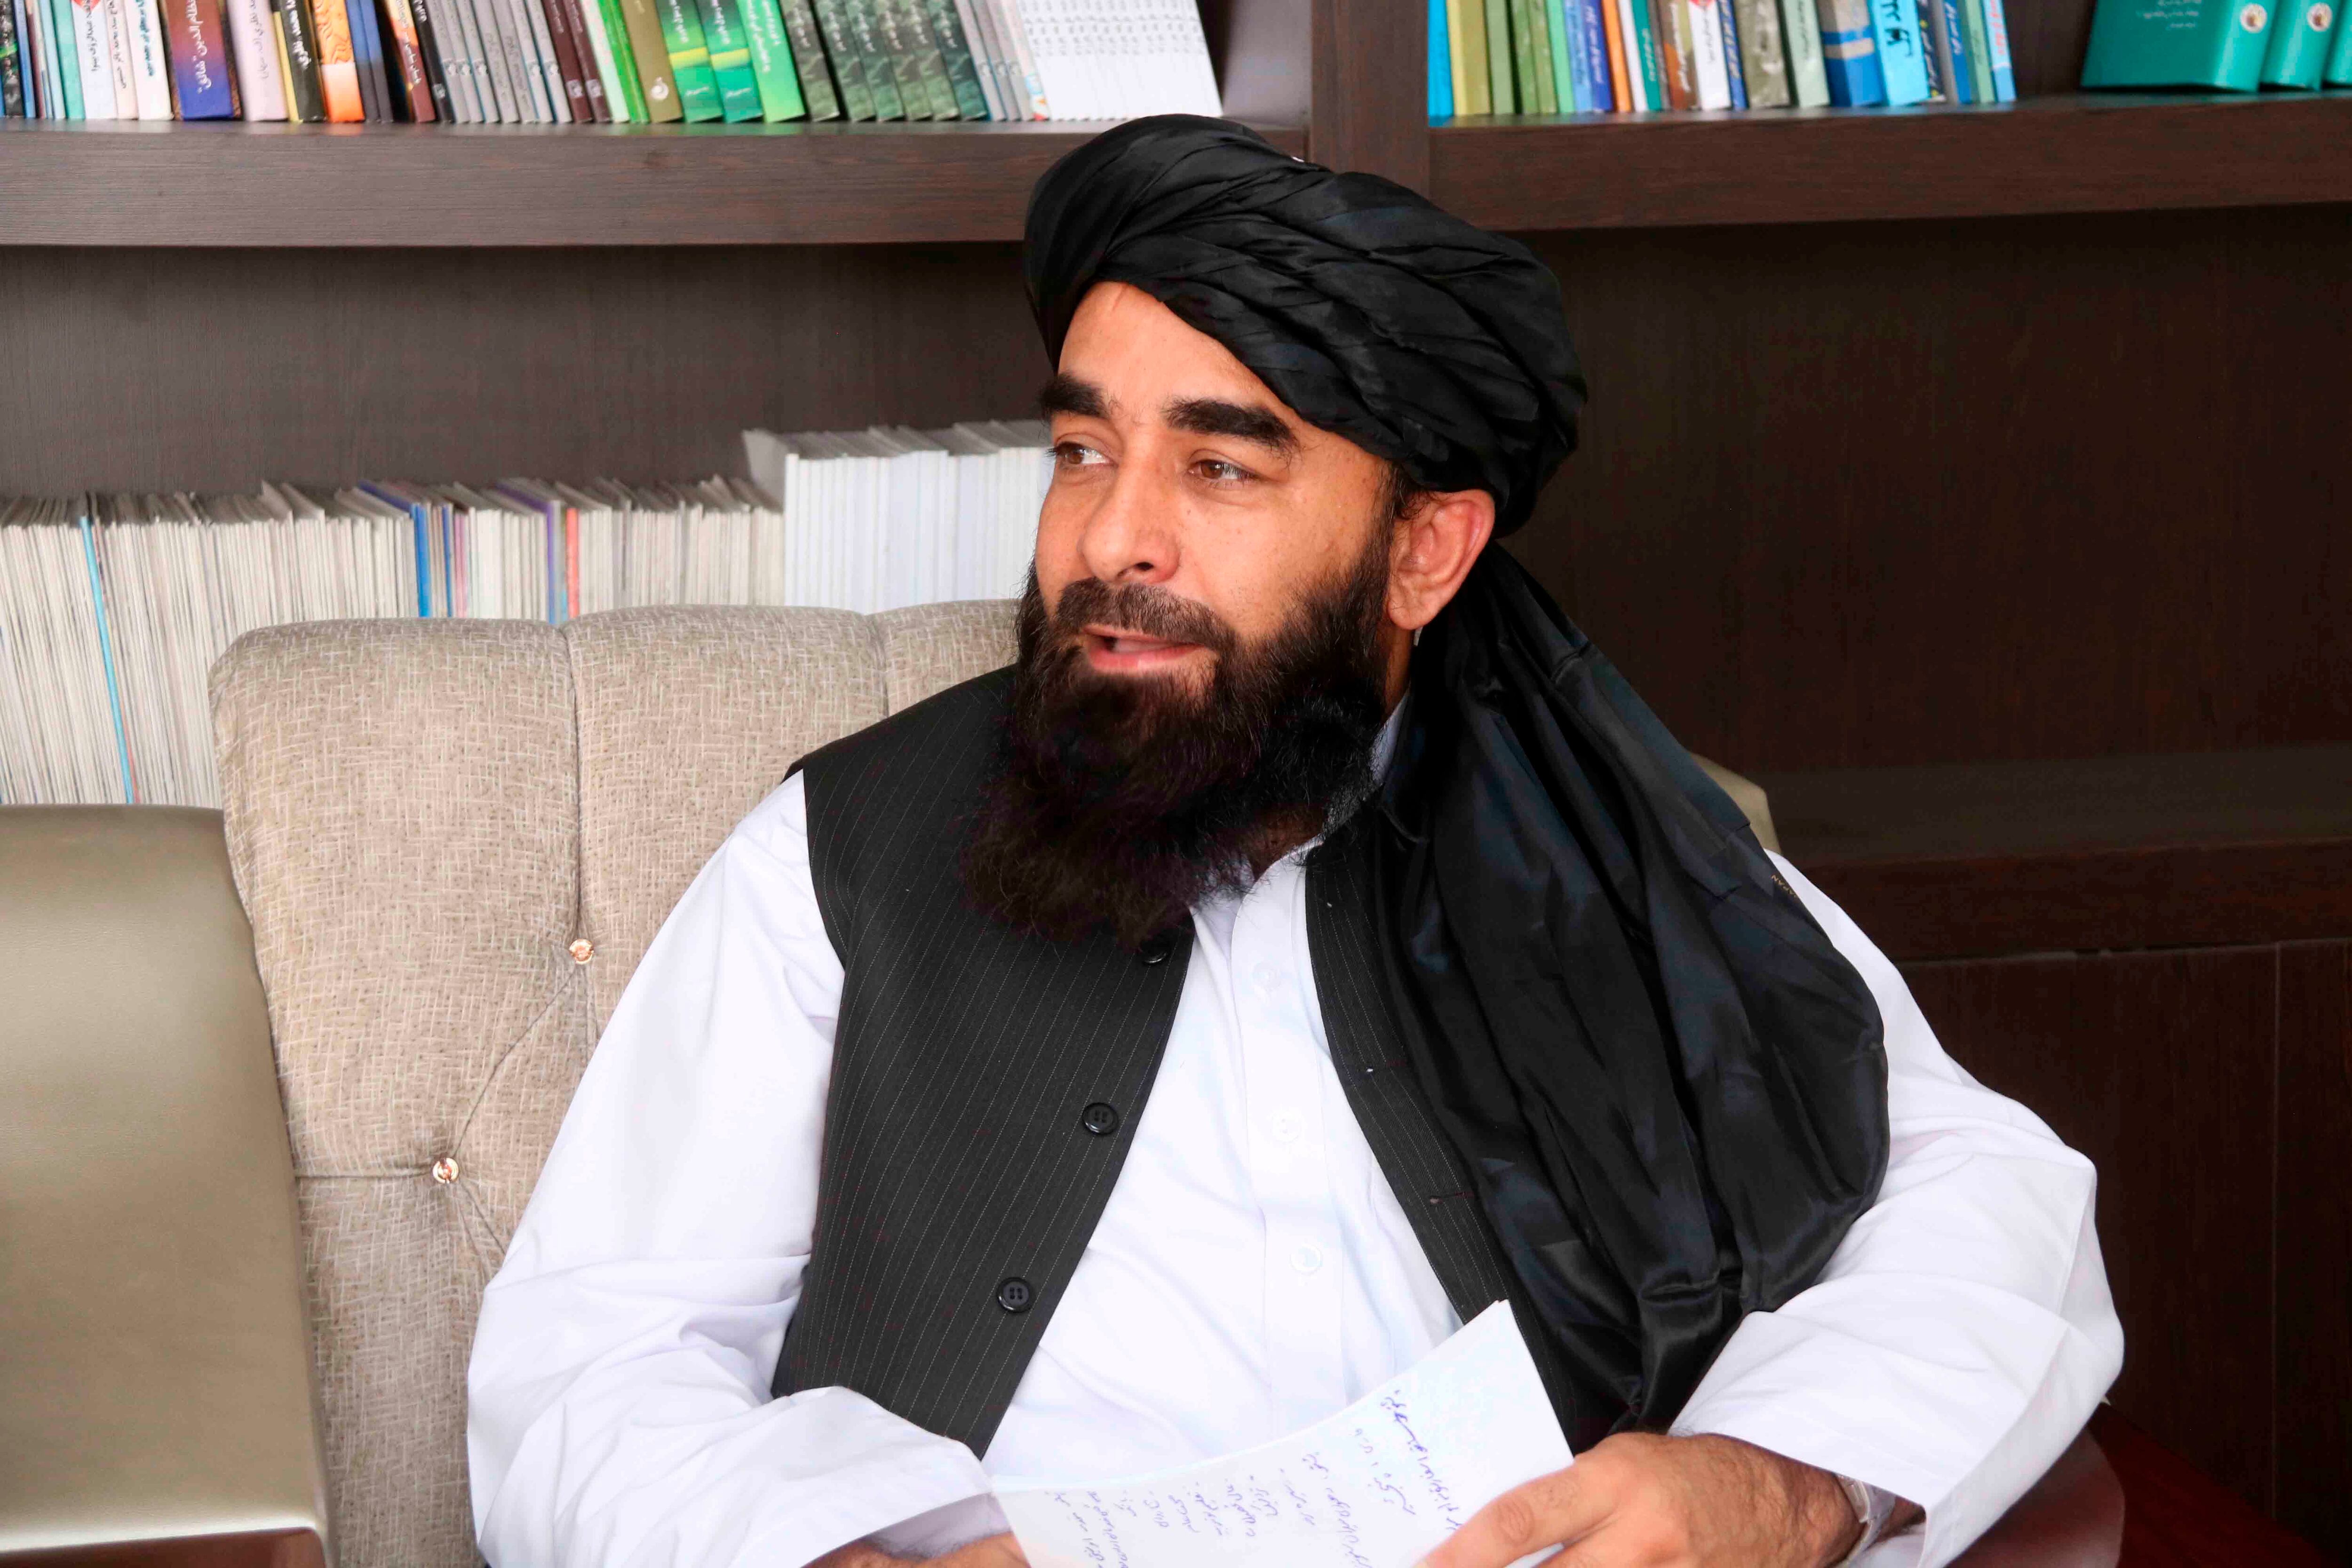 El portavoz de los talibanes, Zabiullah Mujahid, durante una entrevista en su oficina, este miércoles en Kabul. EFE/AKHTER GULFAM